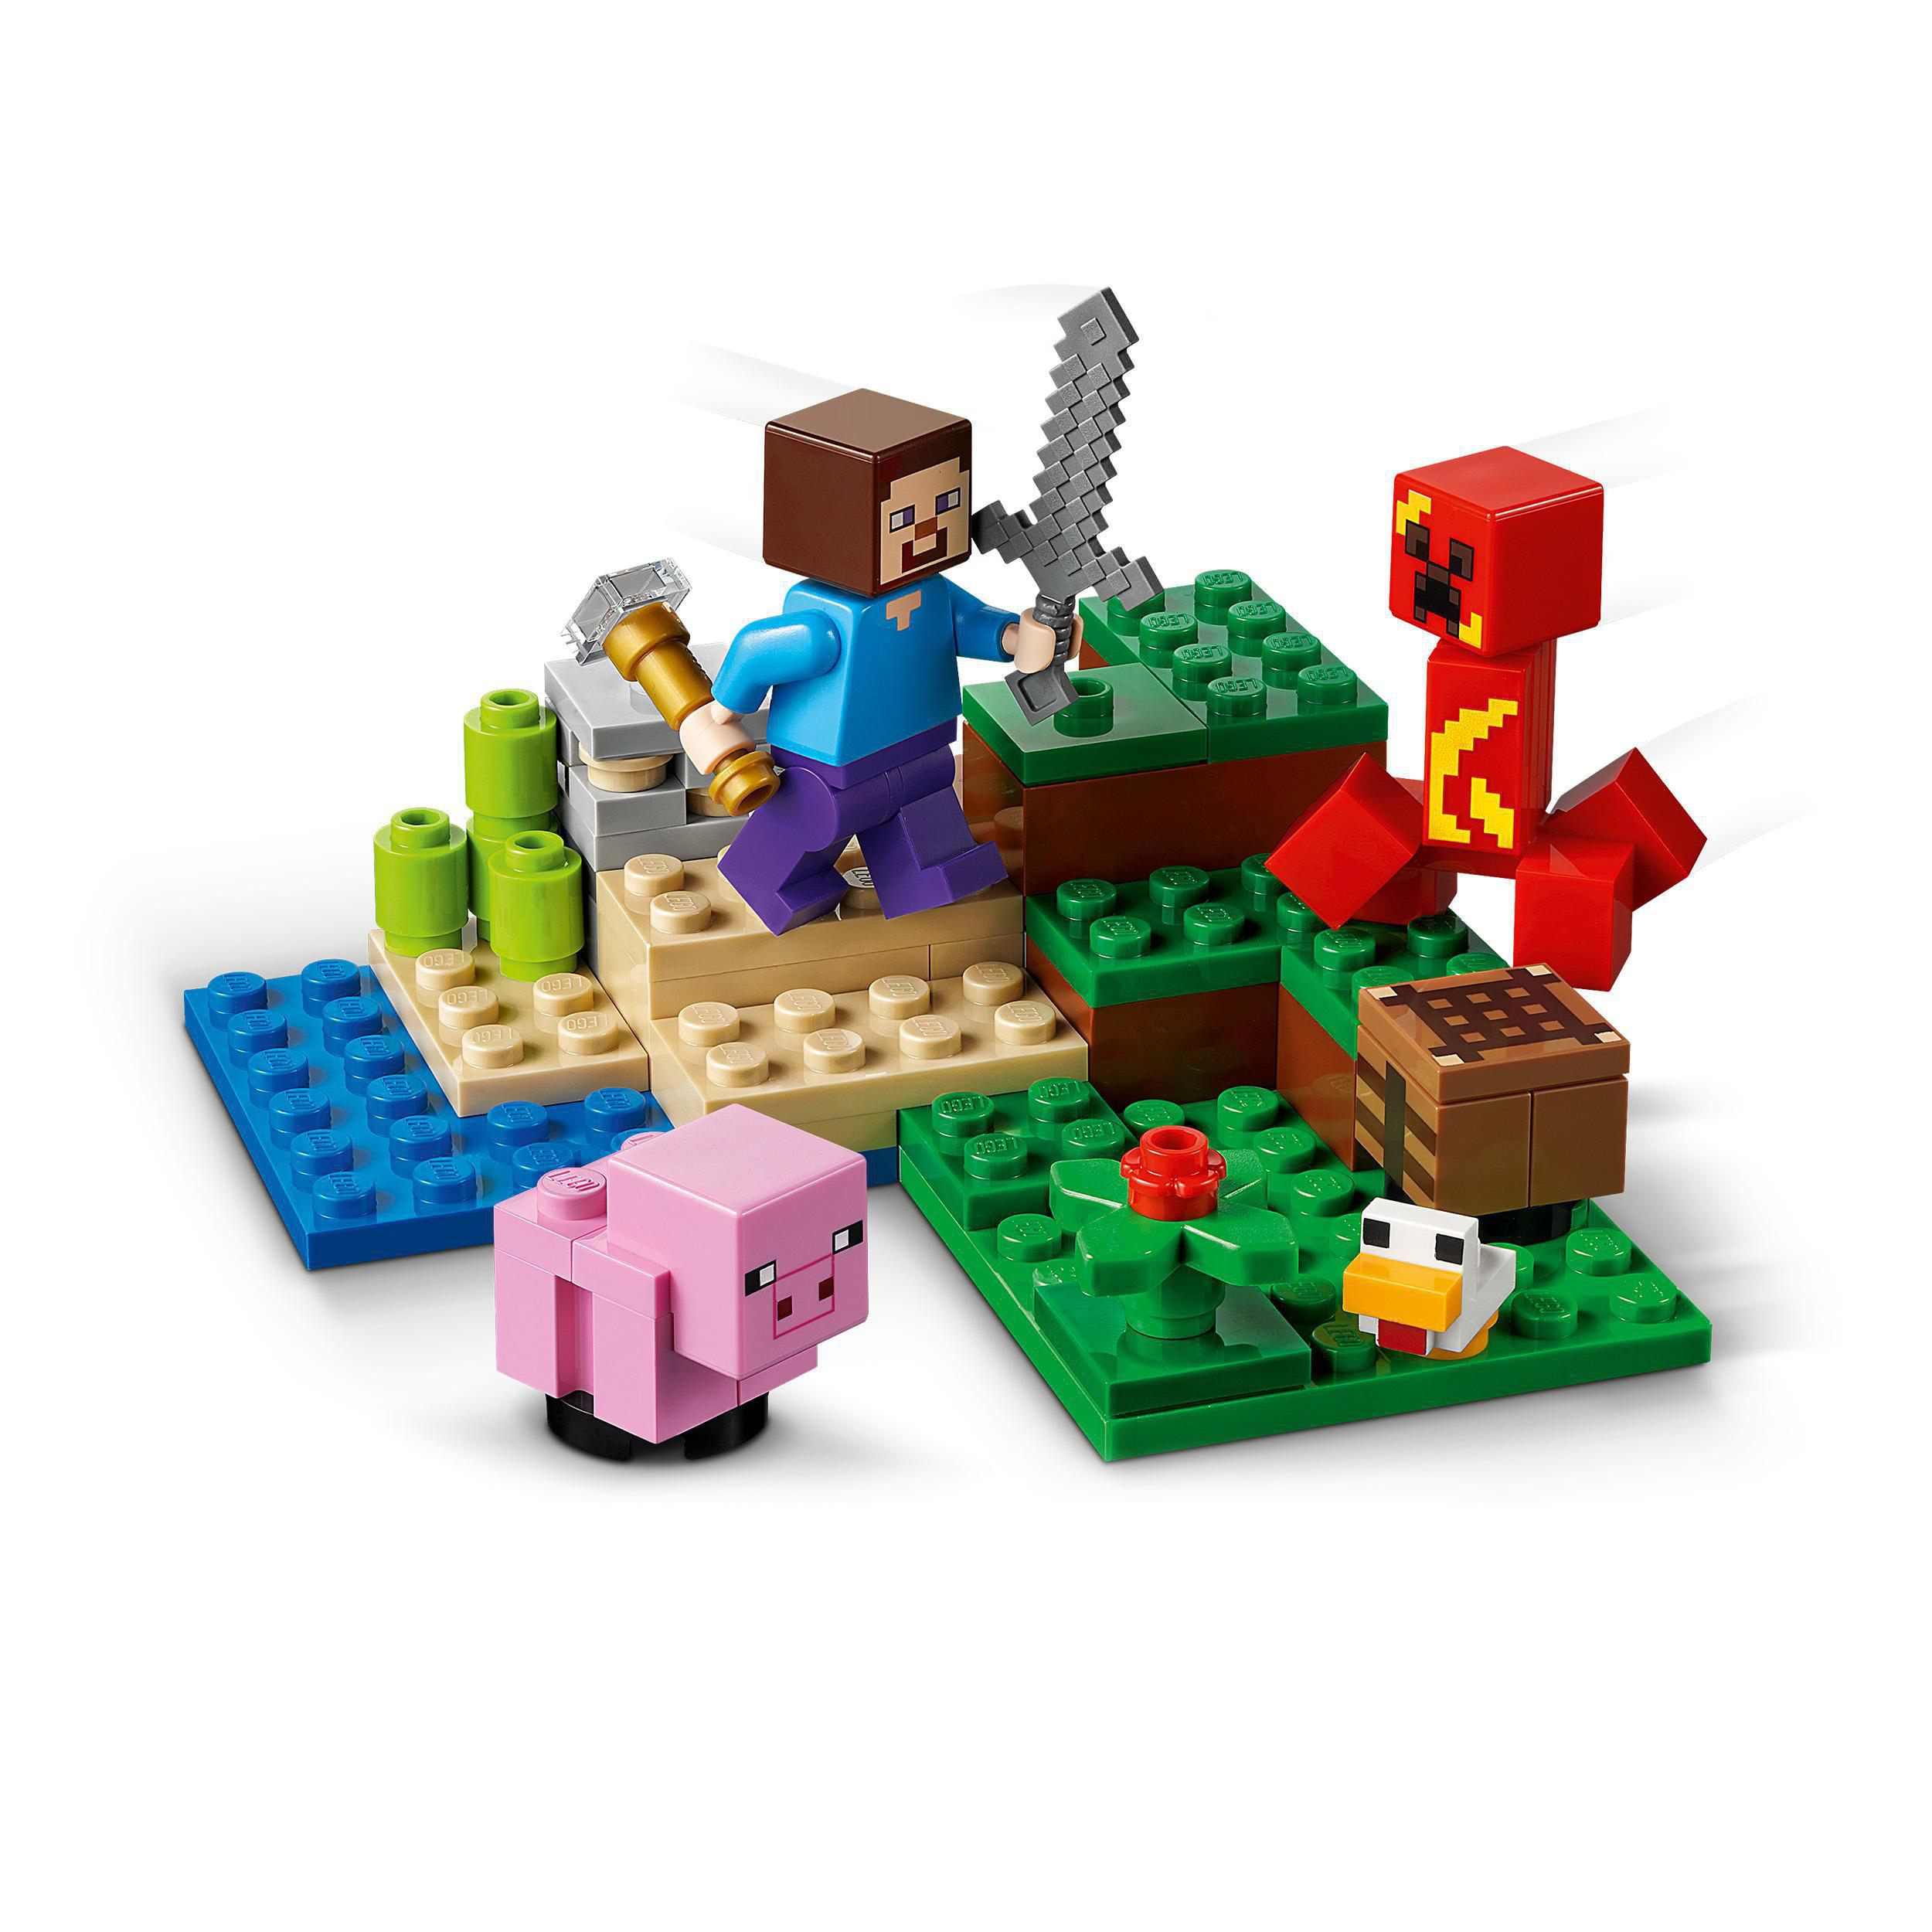 Mehrfarbig Hinterhalt Creeper™ 21177 LEGO Minecraft Der Bausatz, des